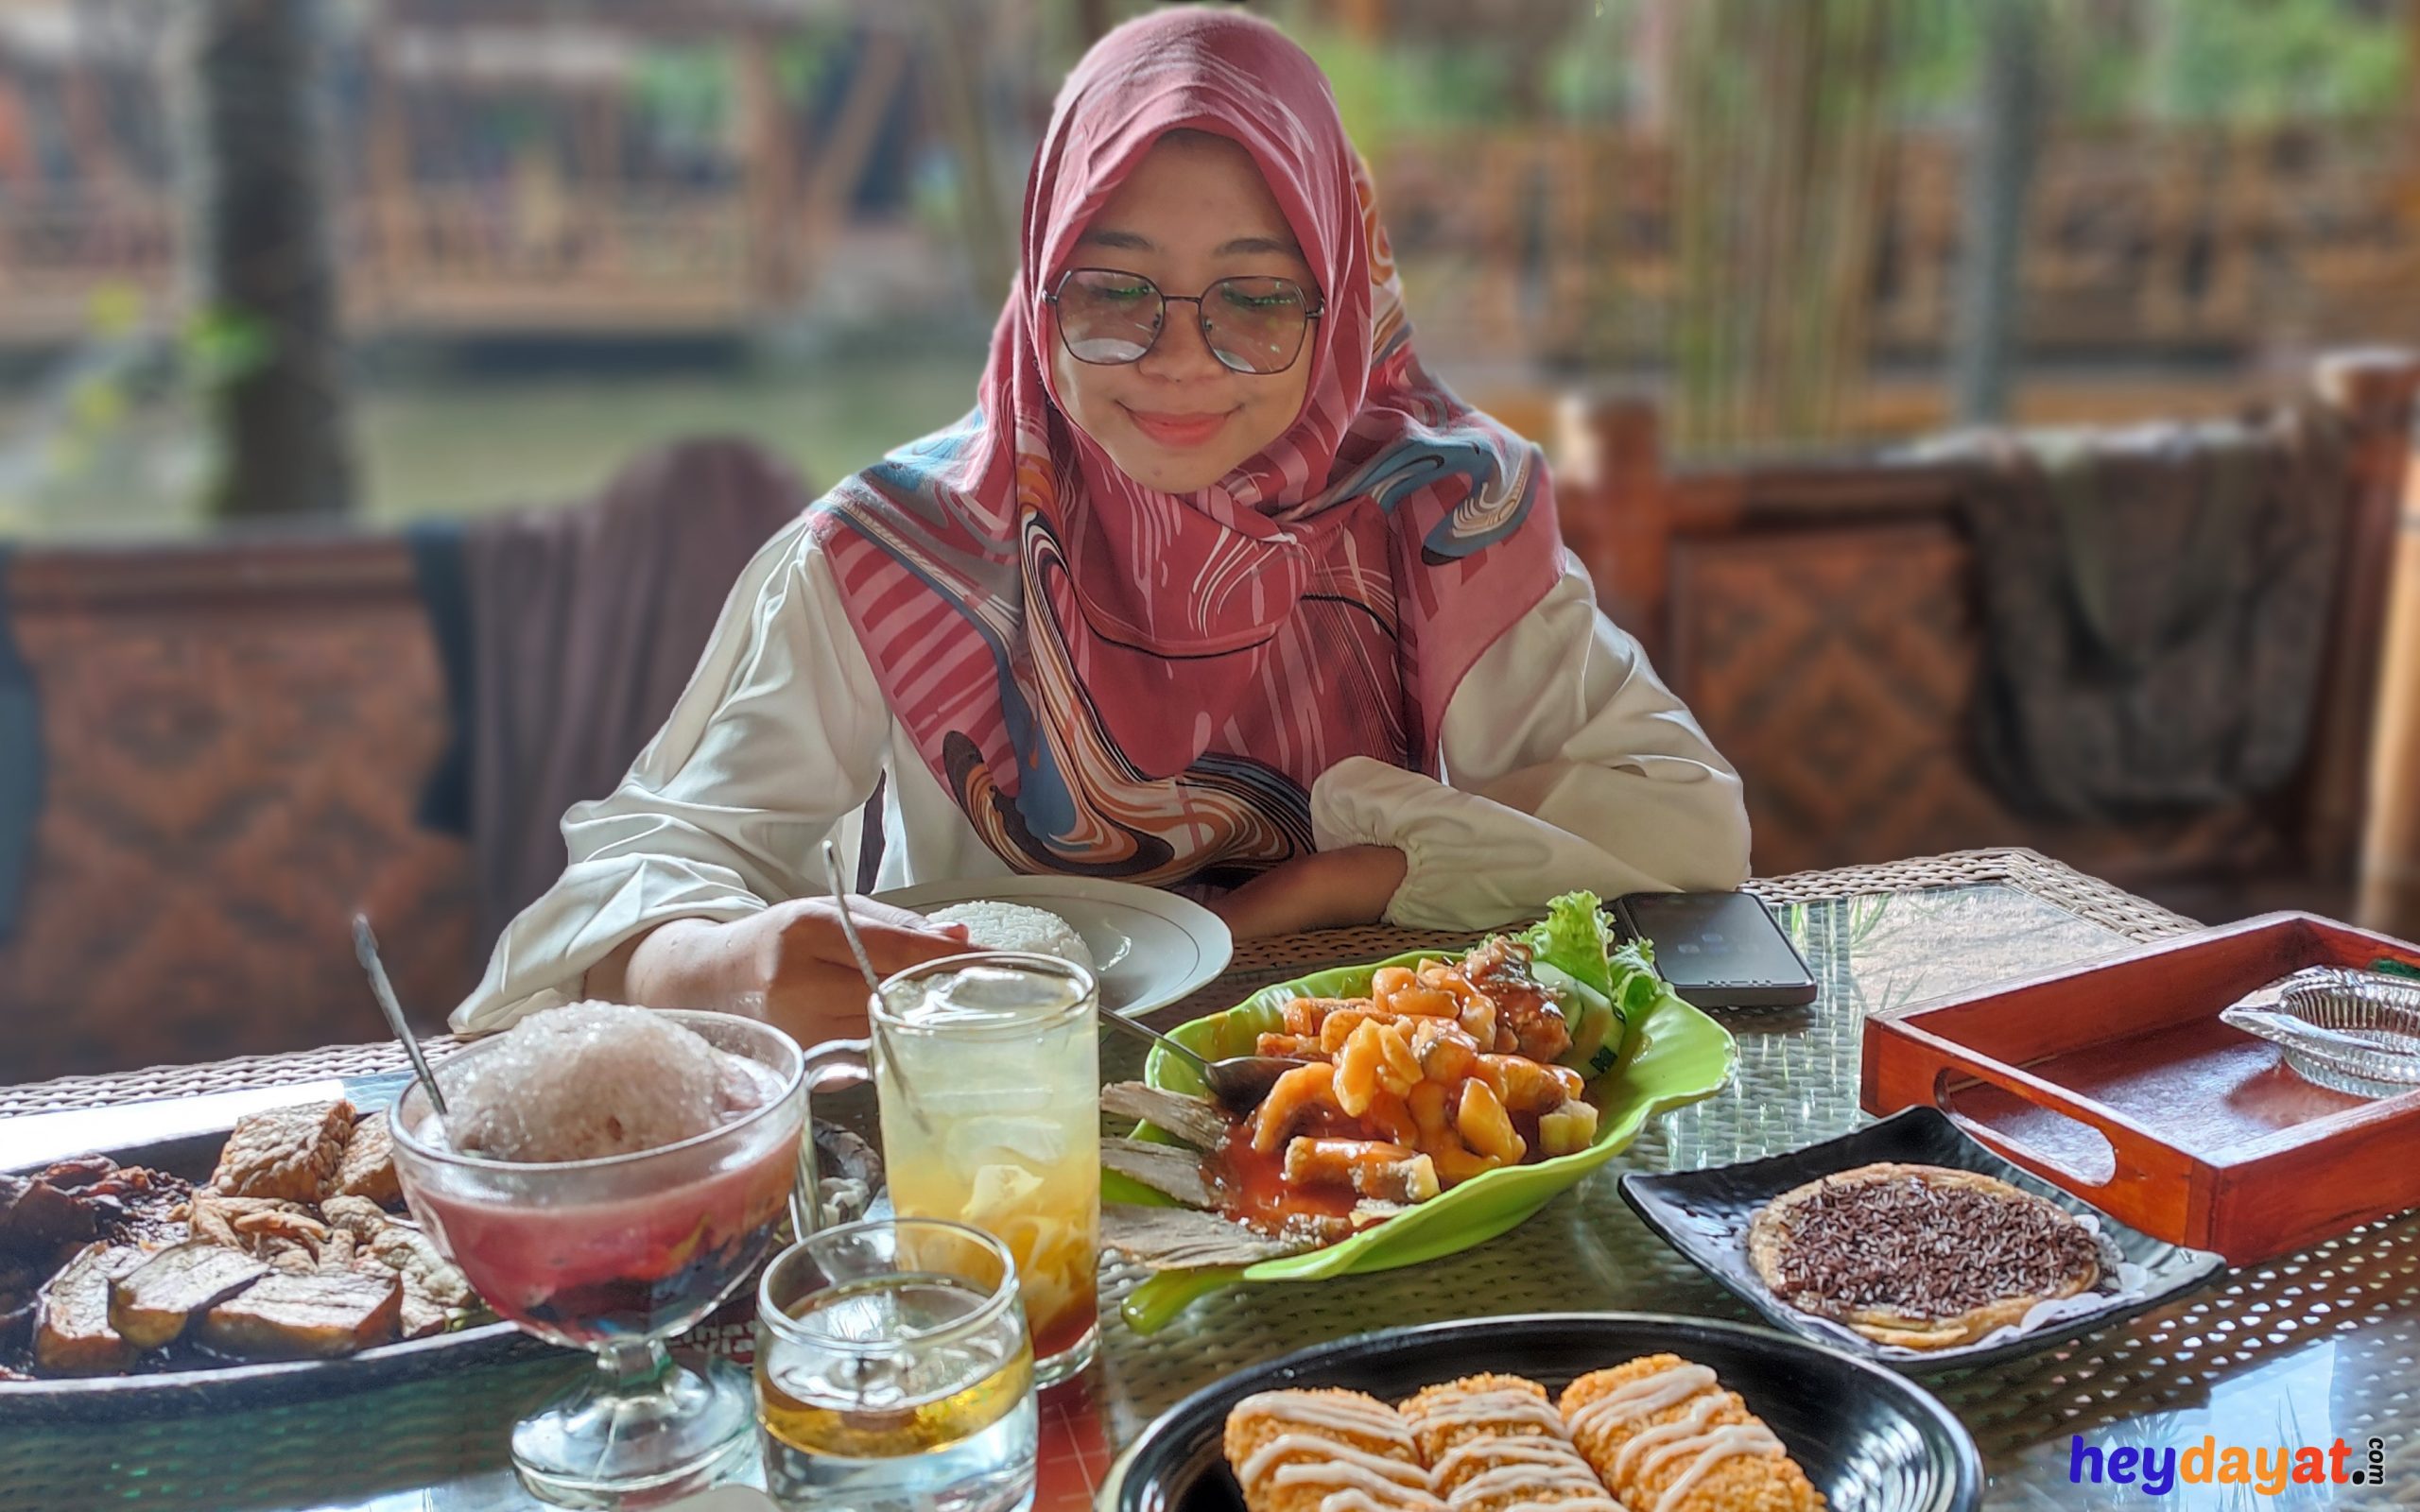 Makan Banyak Dan Enak Surabaya Sidoarjo Pasuruan, Lesehan Teko